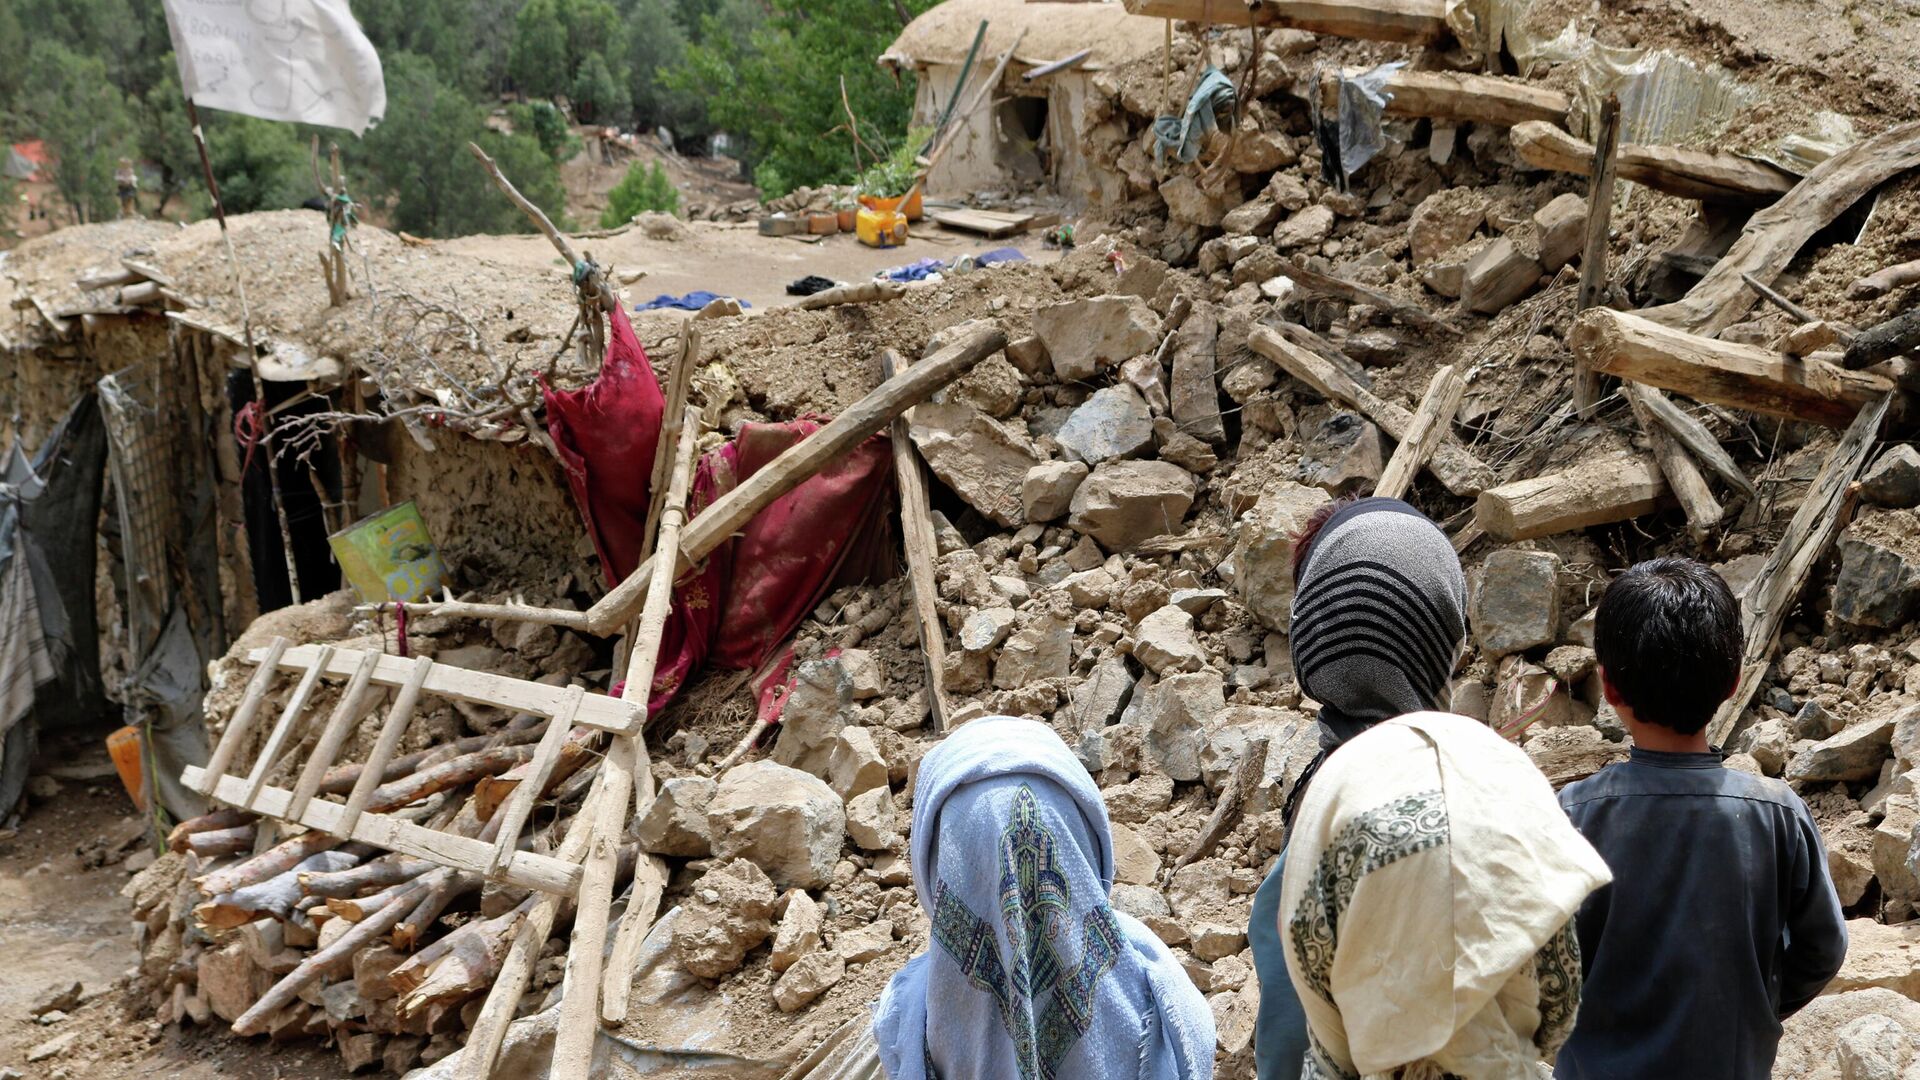 Афганские дети стоят возле дома, который был разрушен в результате землетрясения, Афганистан, 22 июня 2022 г - Sputnik Тоҷикистон, 1920, 24.06.2022